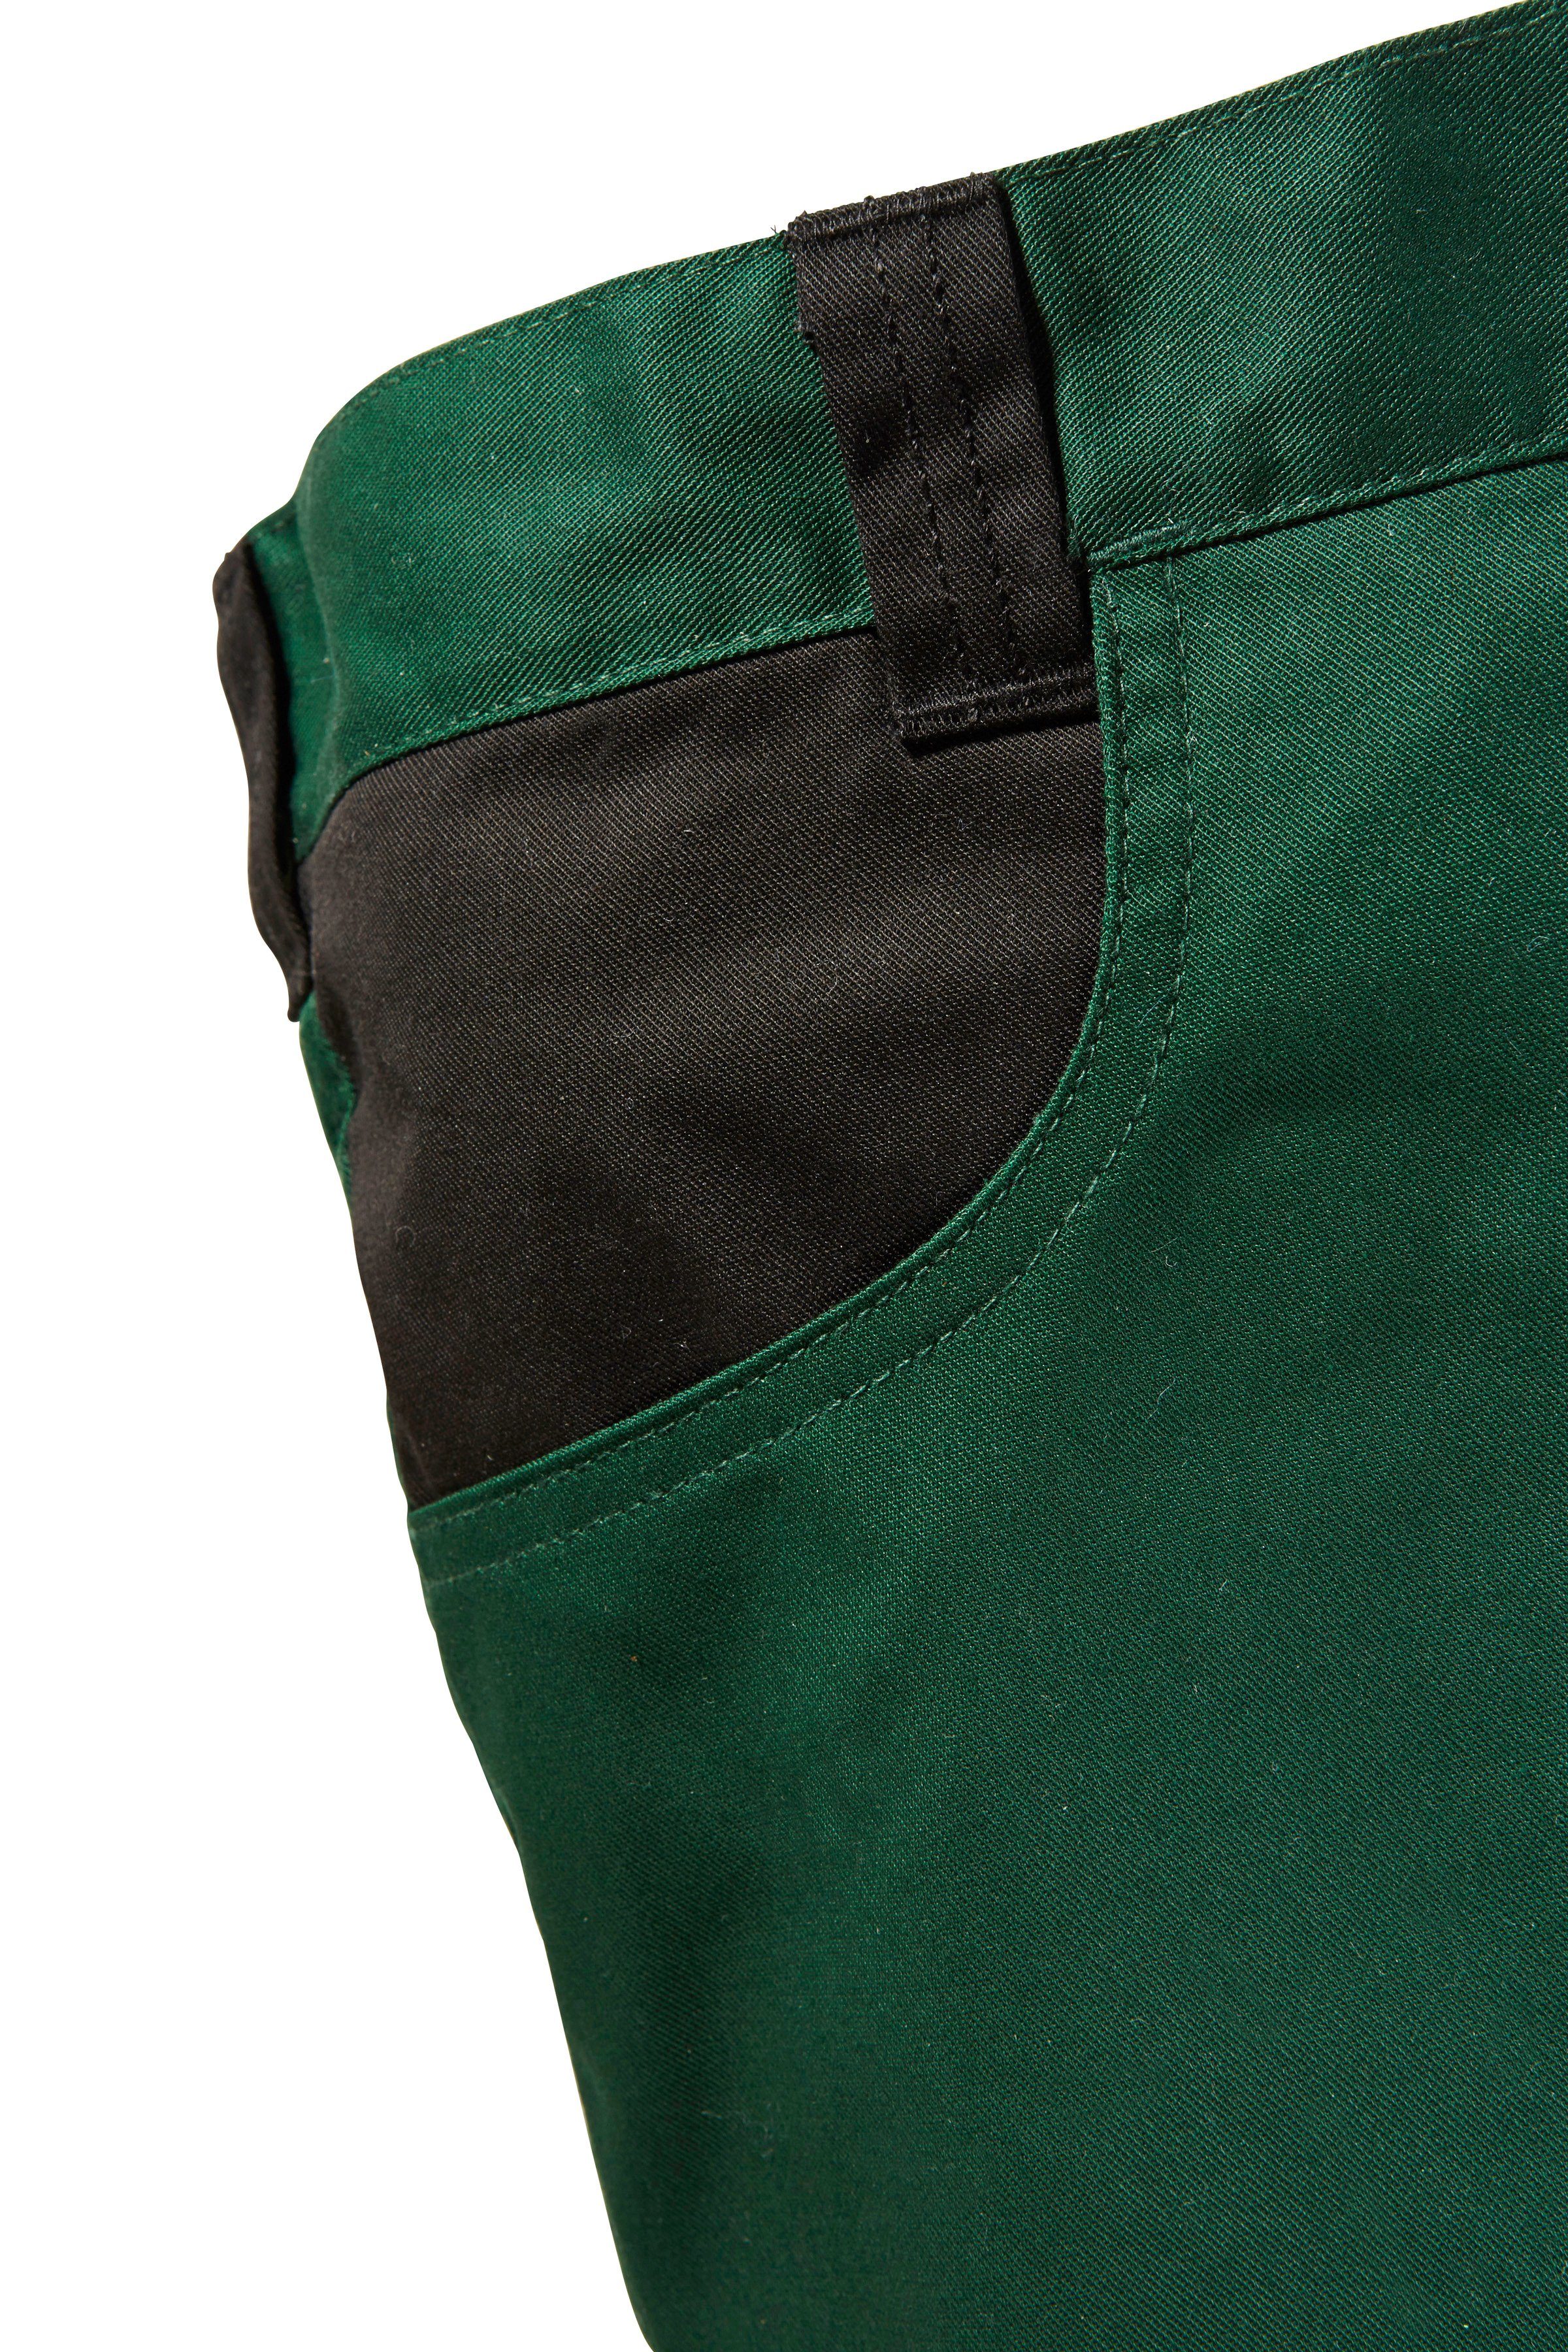 Pull Knieverstärkung mit safety& Arbeitshose more grün-schwarz